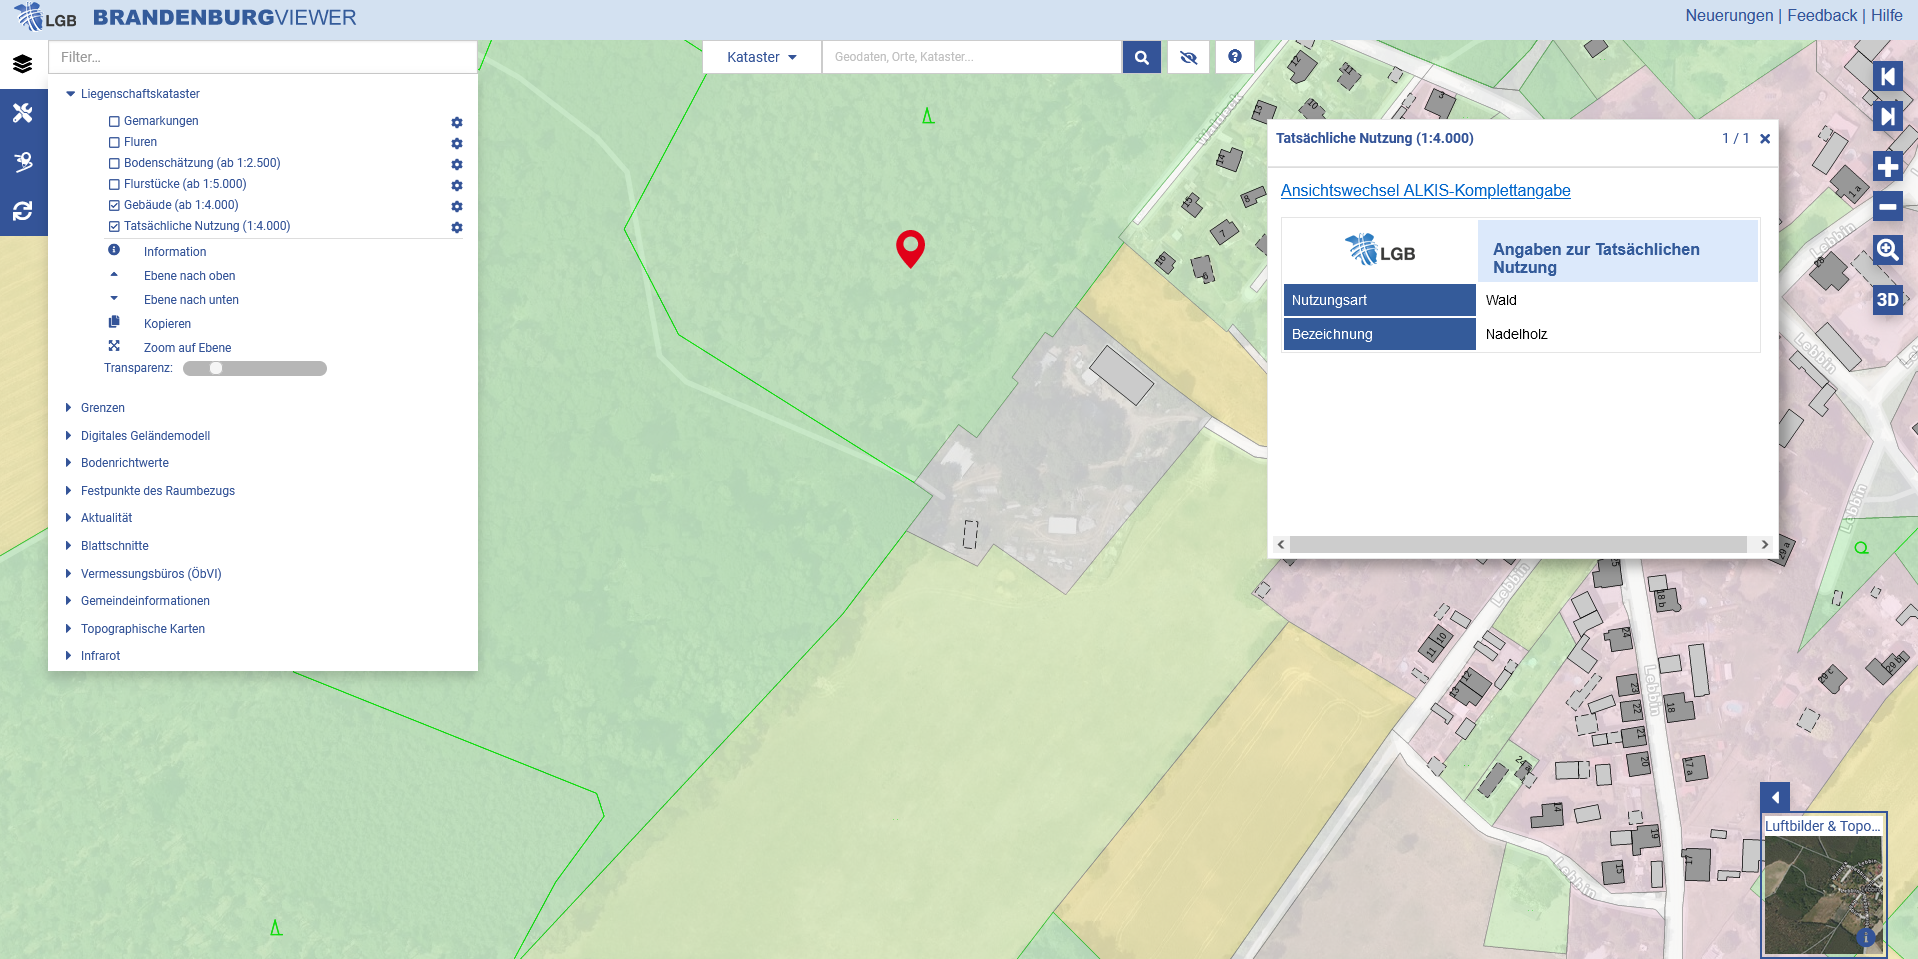 Kartendarstellung aus dem BRANDENBURGVIEWER: Ab sofort kann auch die Tatsächliche Nutzung von Flächen angezeigt werden. Hier zu sehen ist Nadelholz in einem Wald bei Lebbin im Landkreis Oder-Spree. 